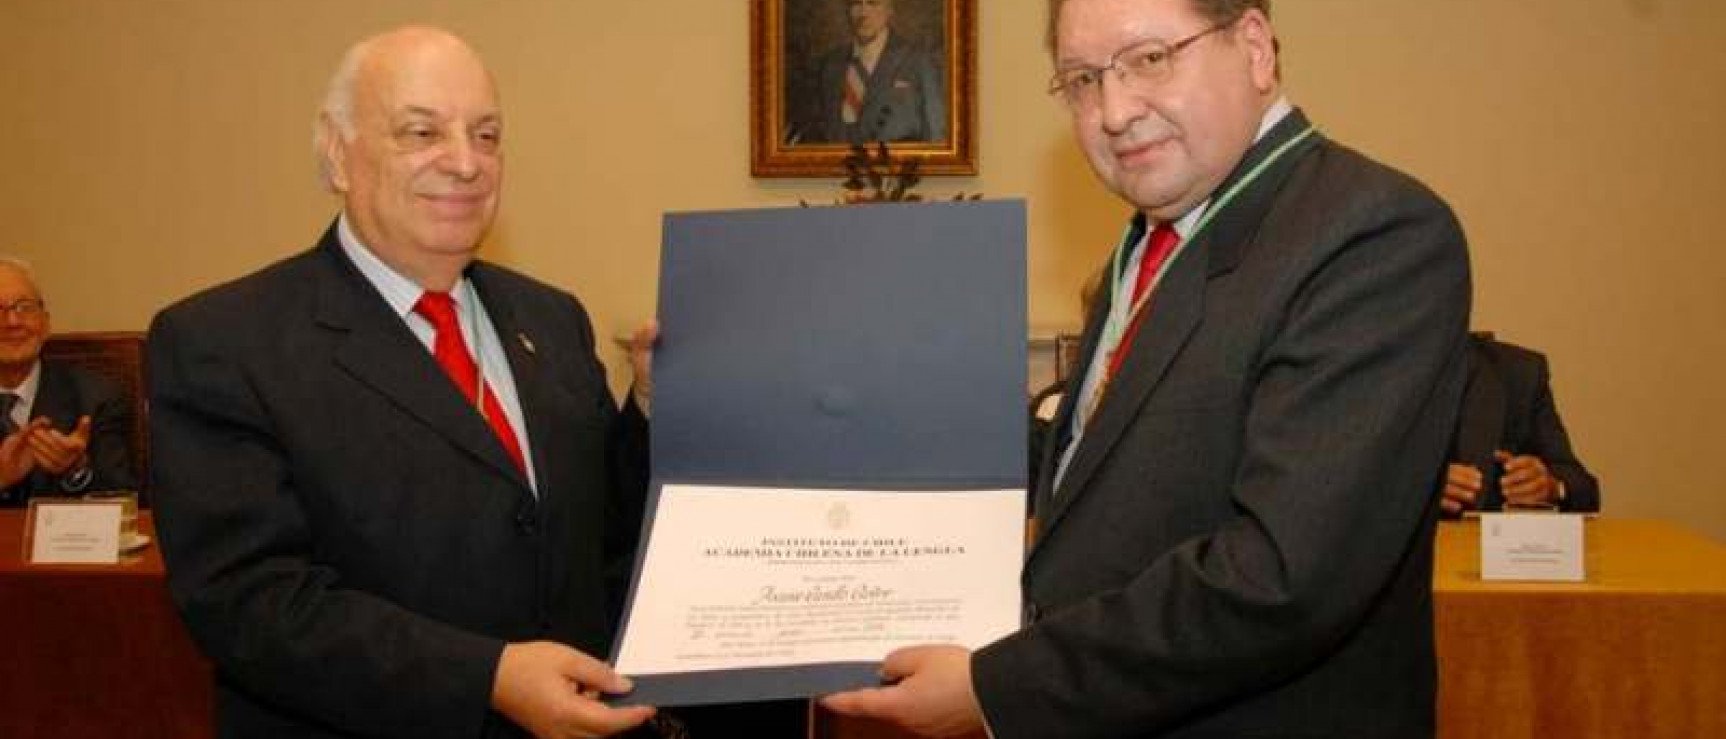 Alfredo Matus, director de la Academia Chilena de la Lengua, entrega el diploma académico a Ascanio Cavallo. 